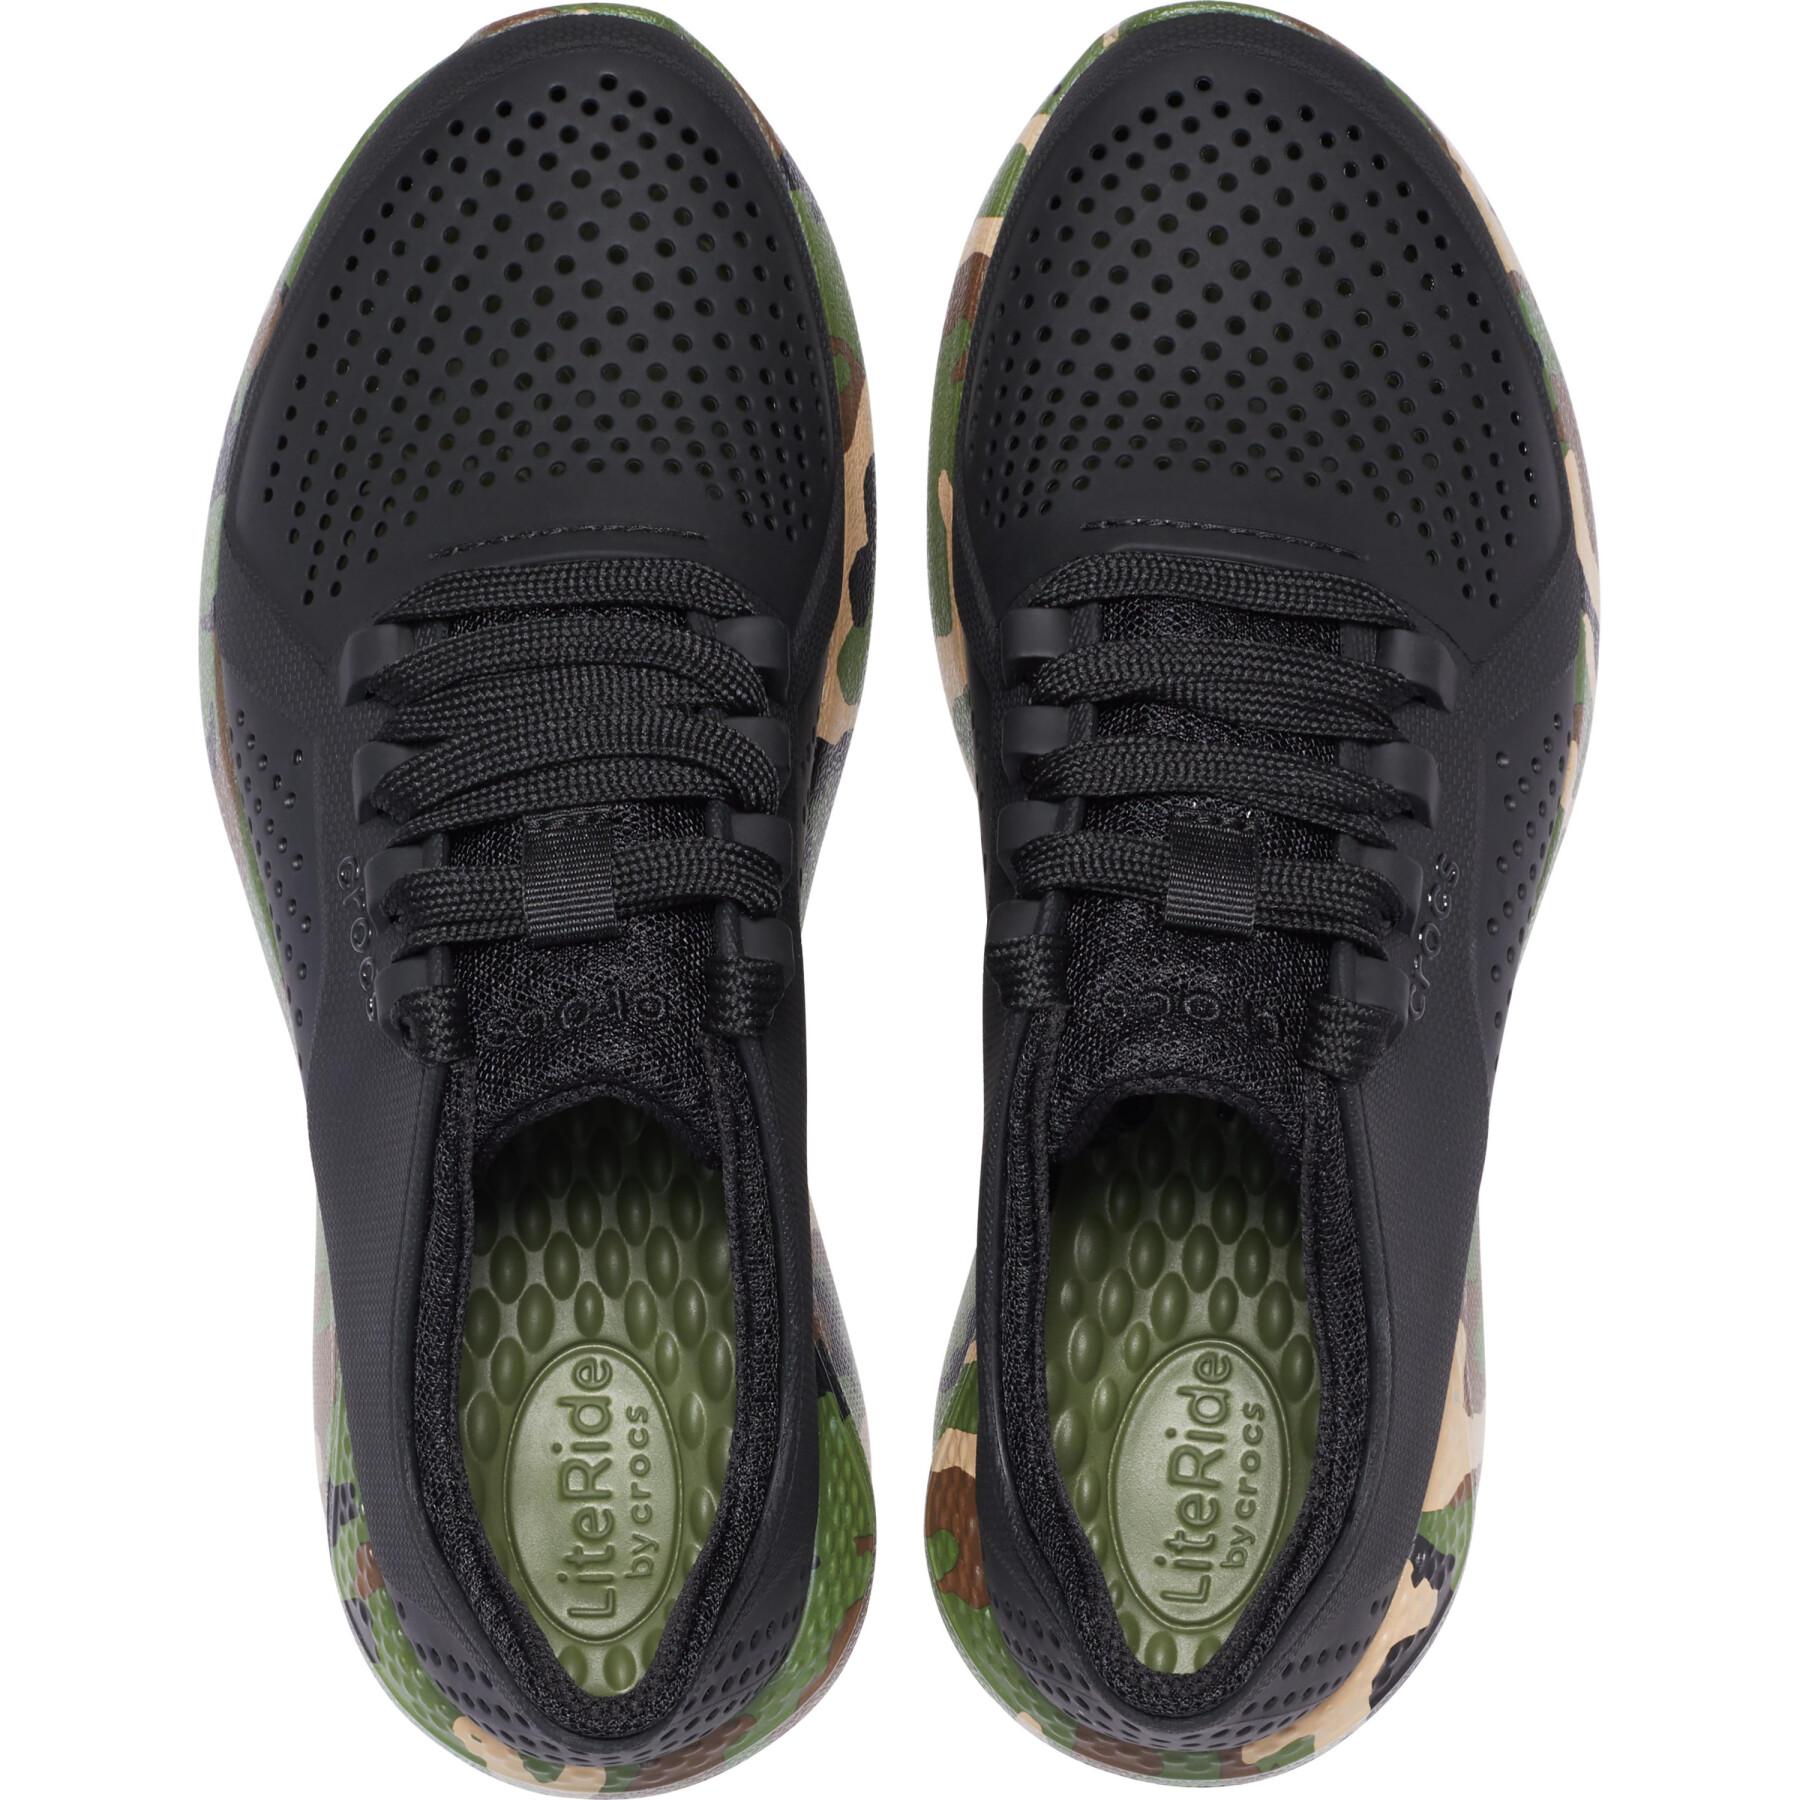 Camouflage bedruckte Schuhe für Frauen Crocs Literide™ Pacer